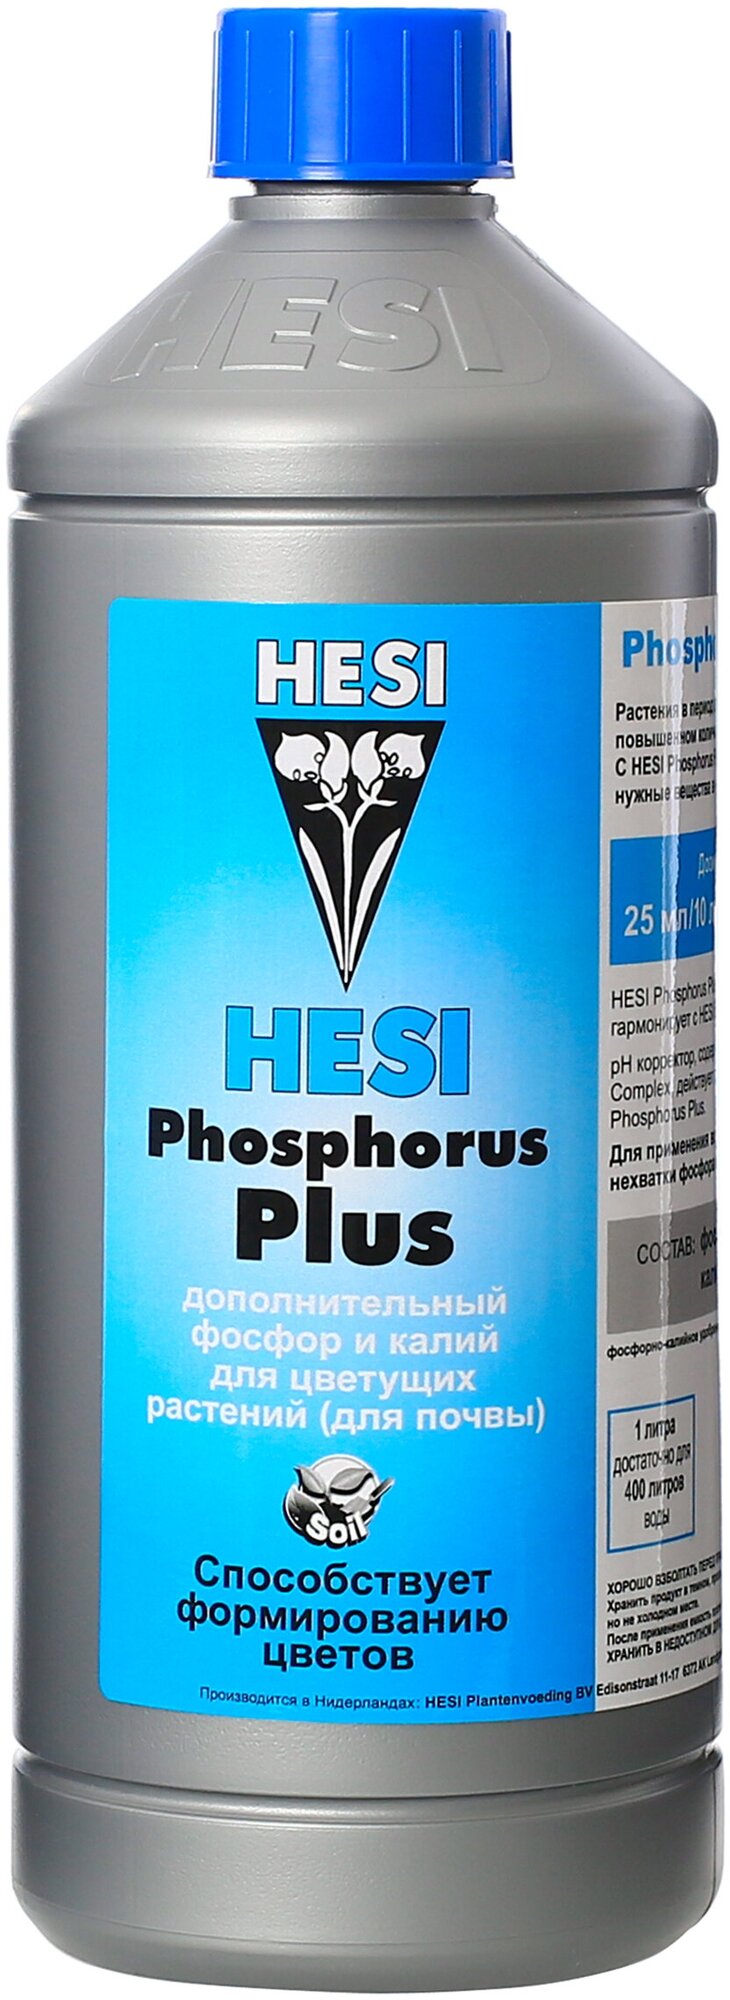 Hesi Phosphor Plus